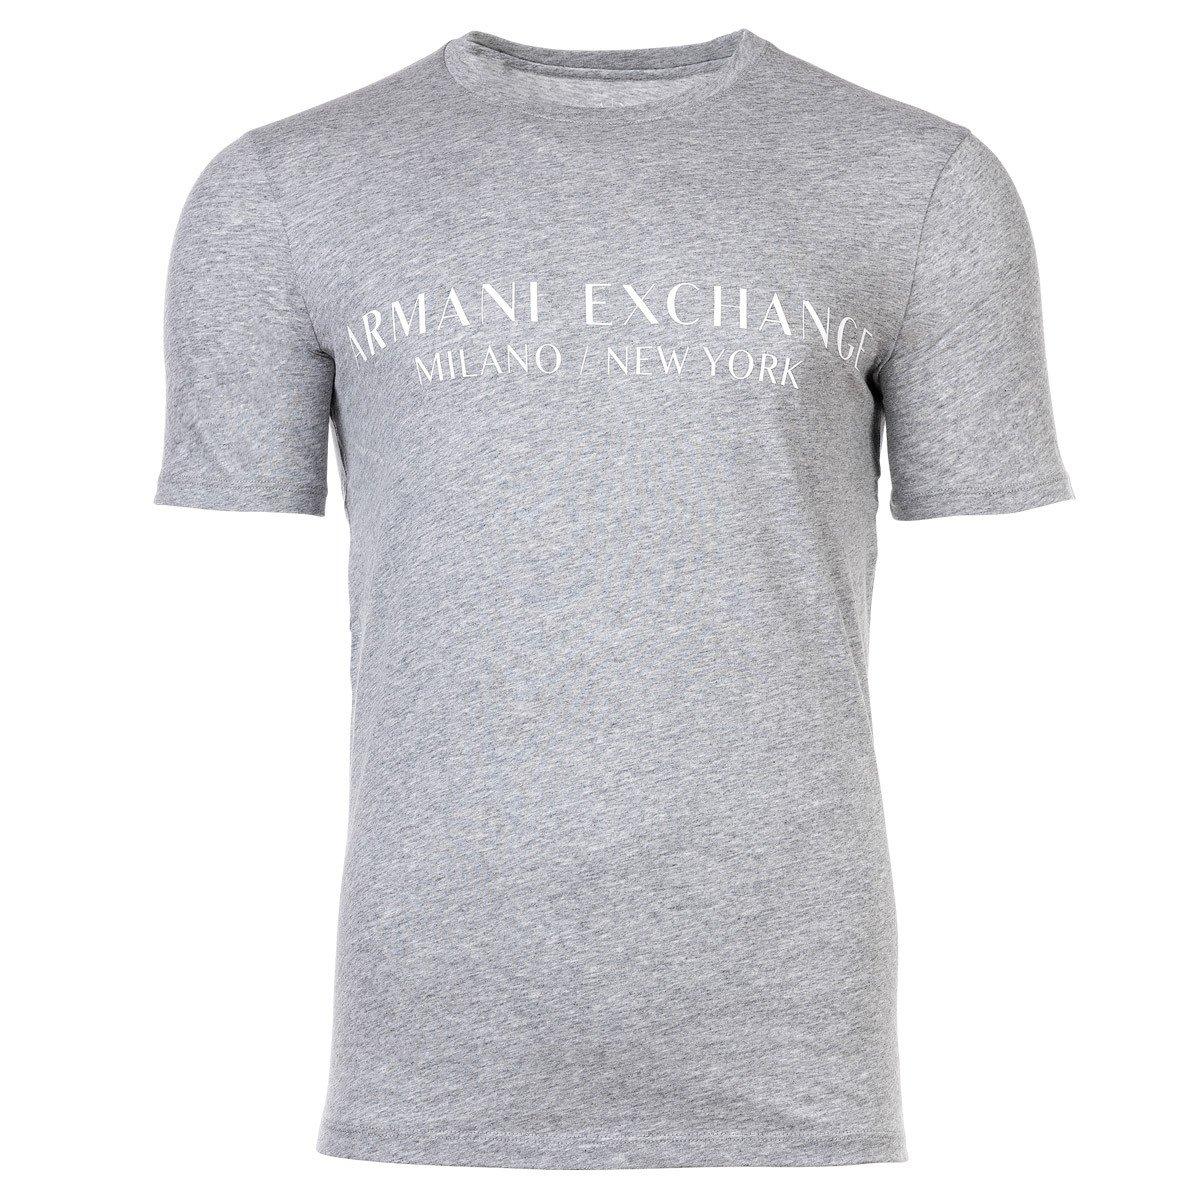 T-shirt Sportlich Bequem Sitzend Herren Grau S von Armani Exchange